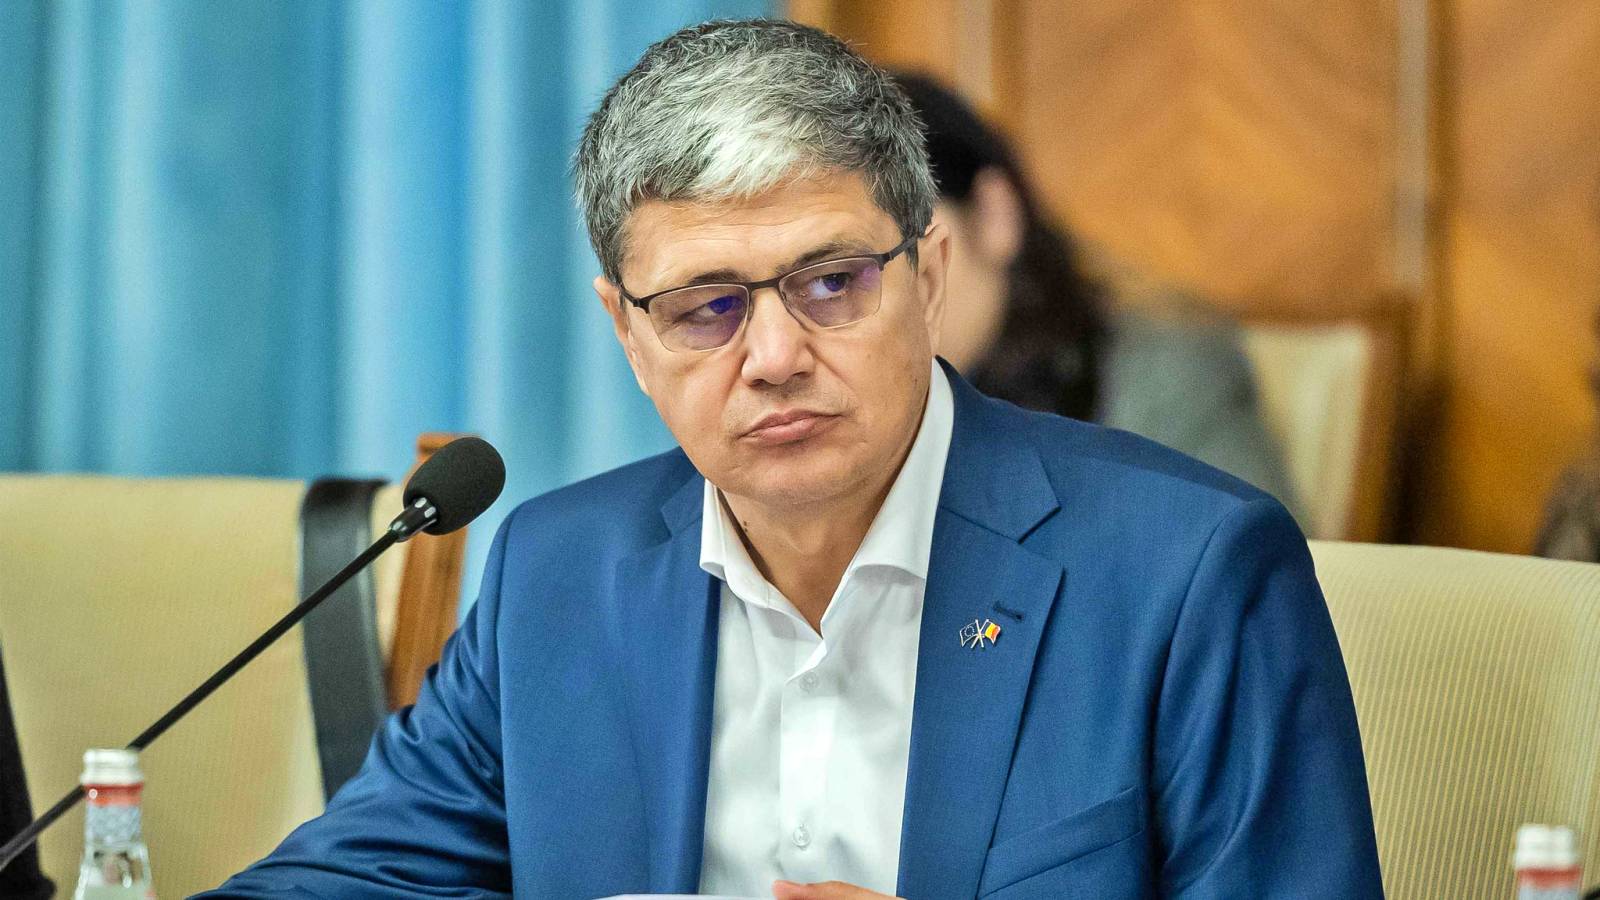 Marcel Bolos kondigt officieel de LAST MINUTE-beslissingen aan over de toekomst van miljoenen Roemenen